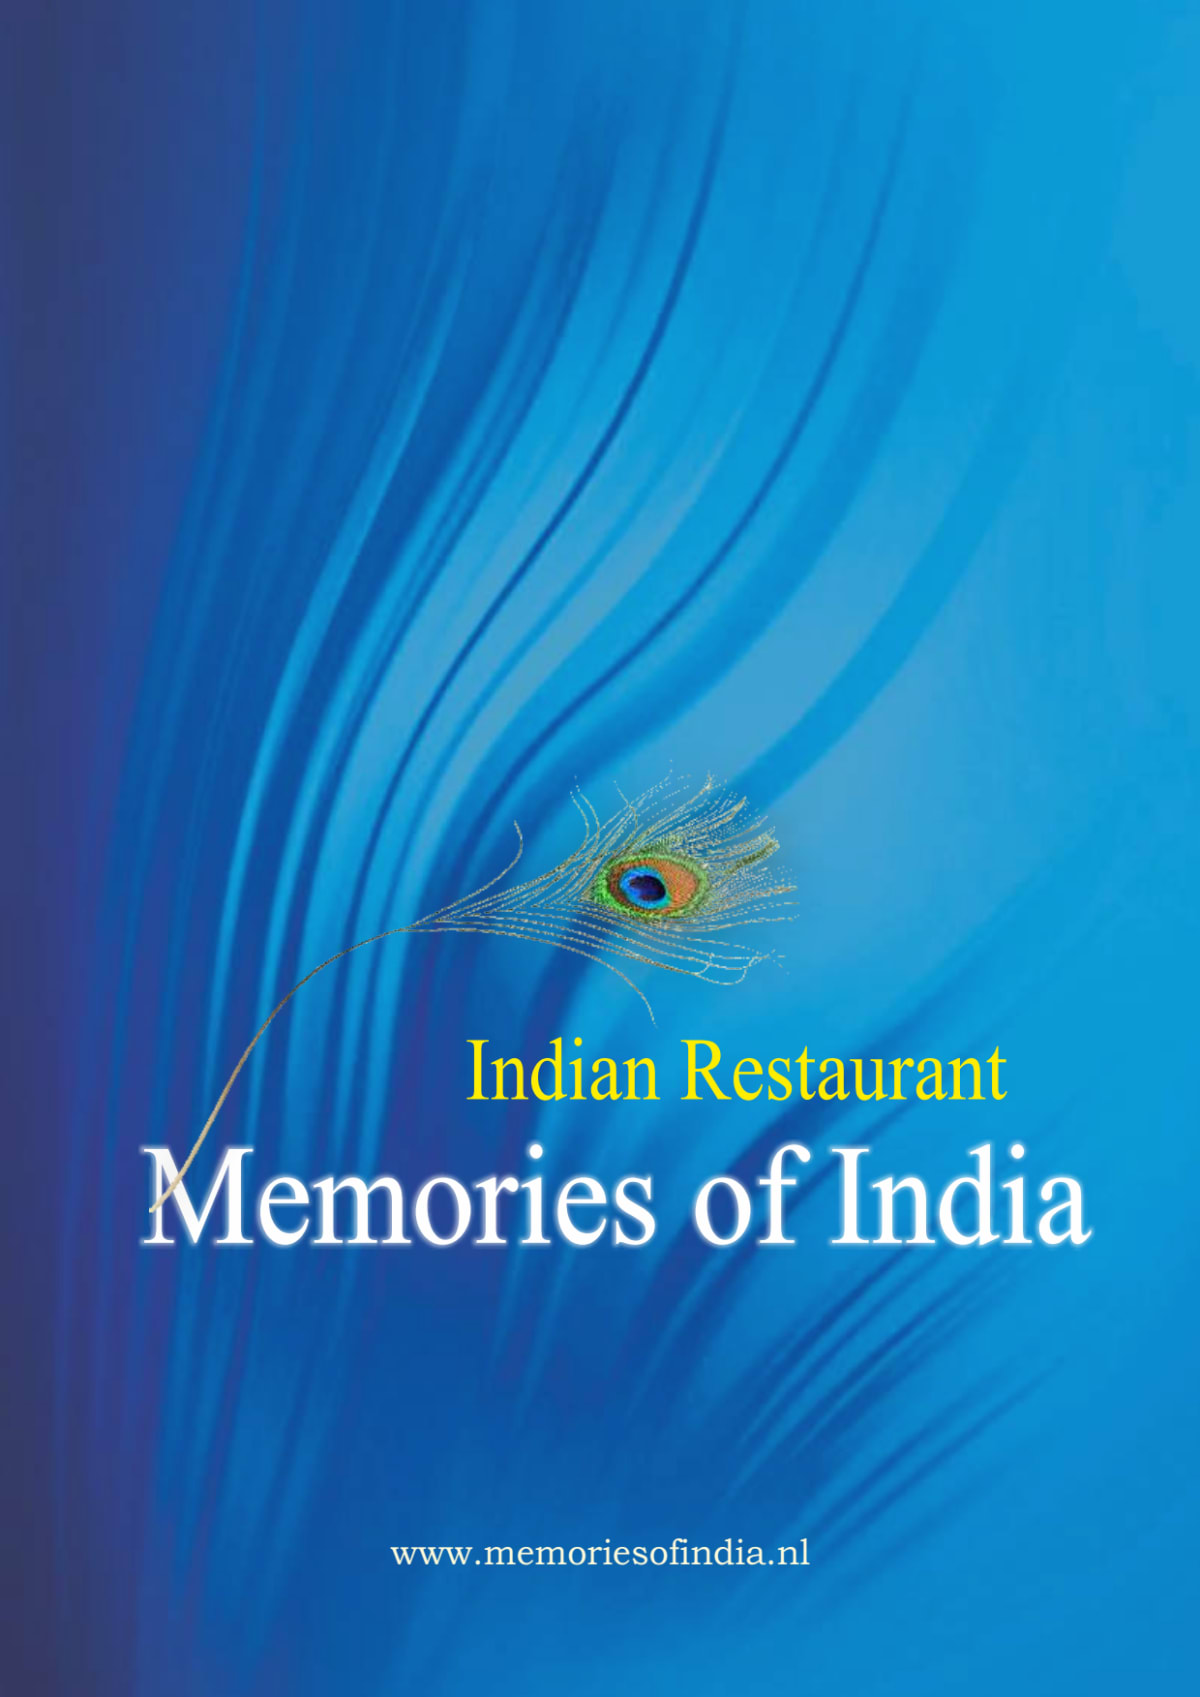 Memories of India menu